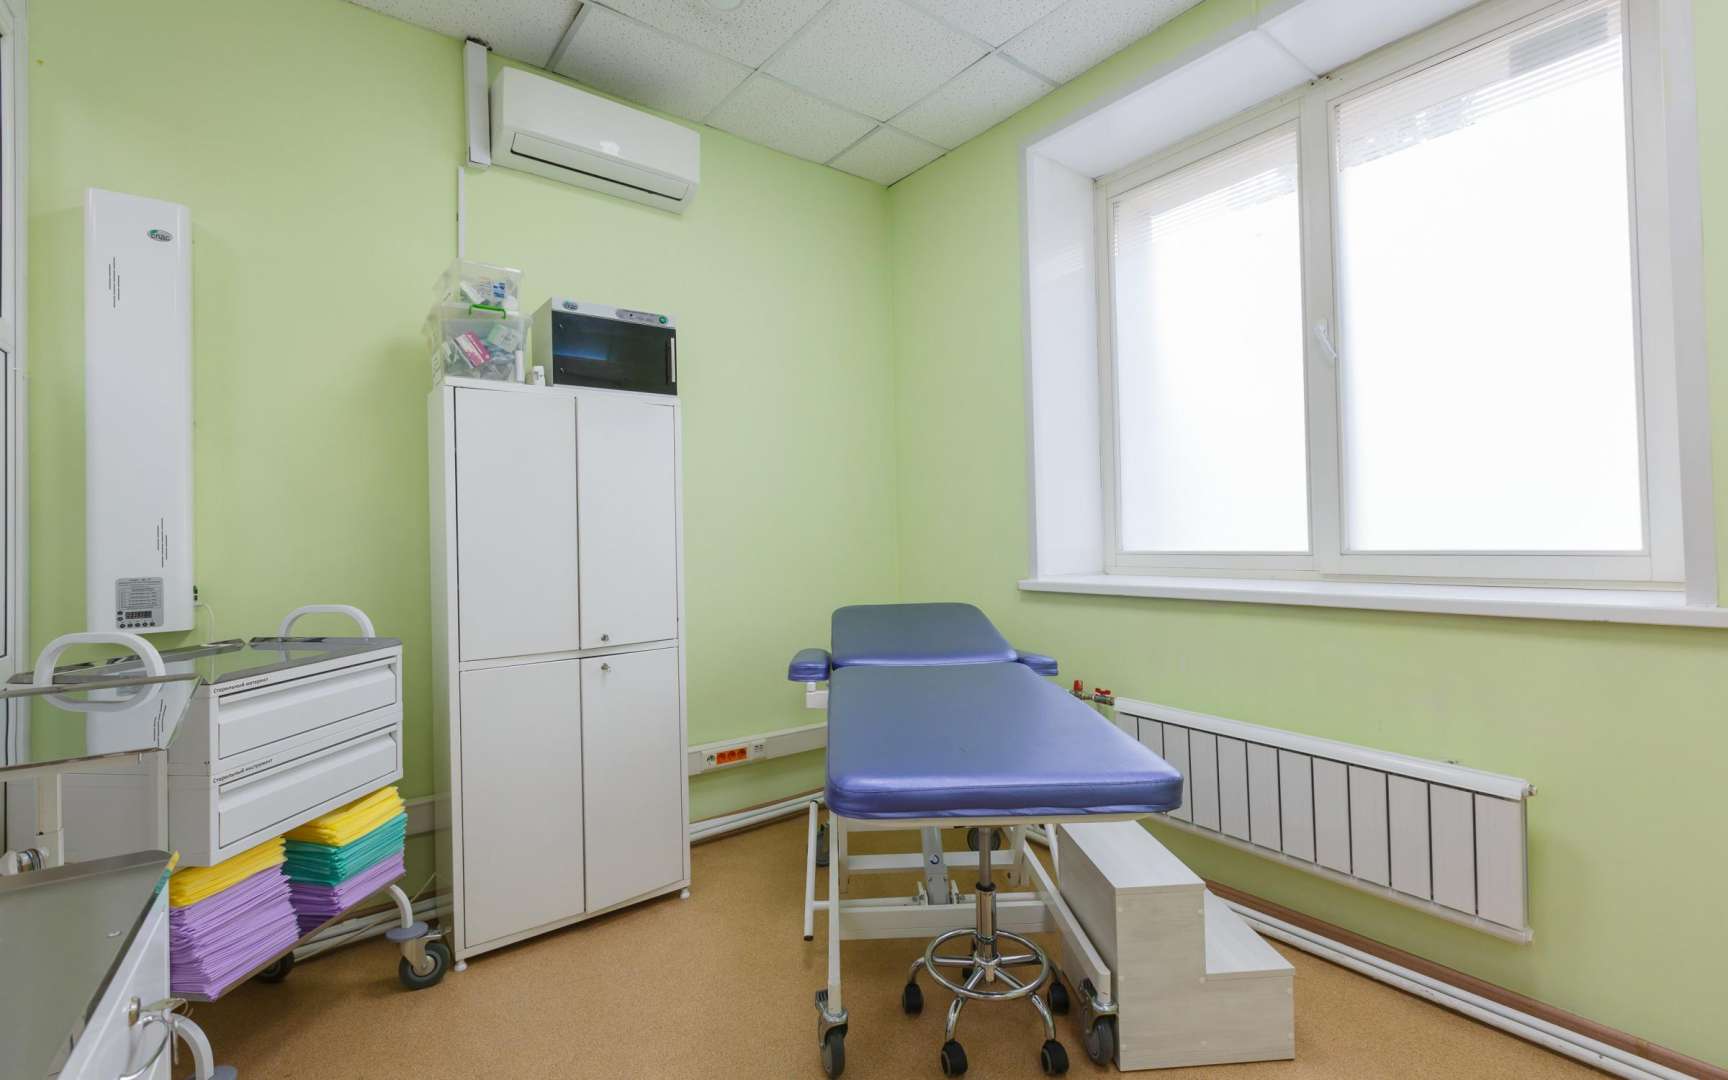 Клиника на 9 мая в красноярске